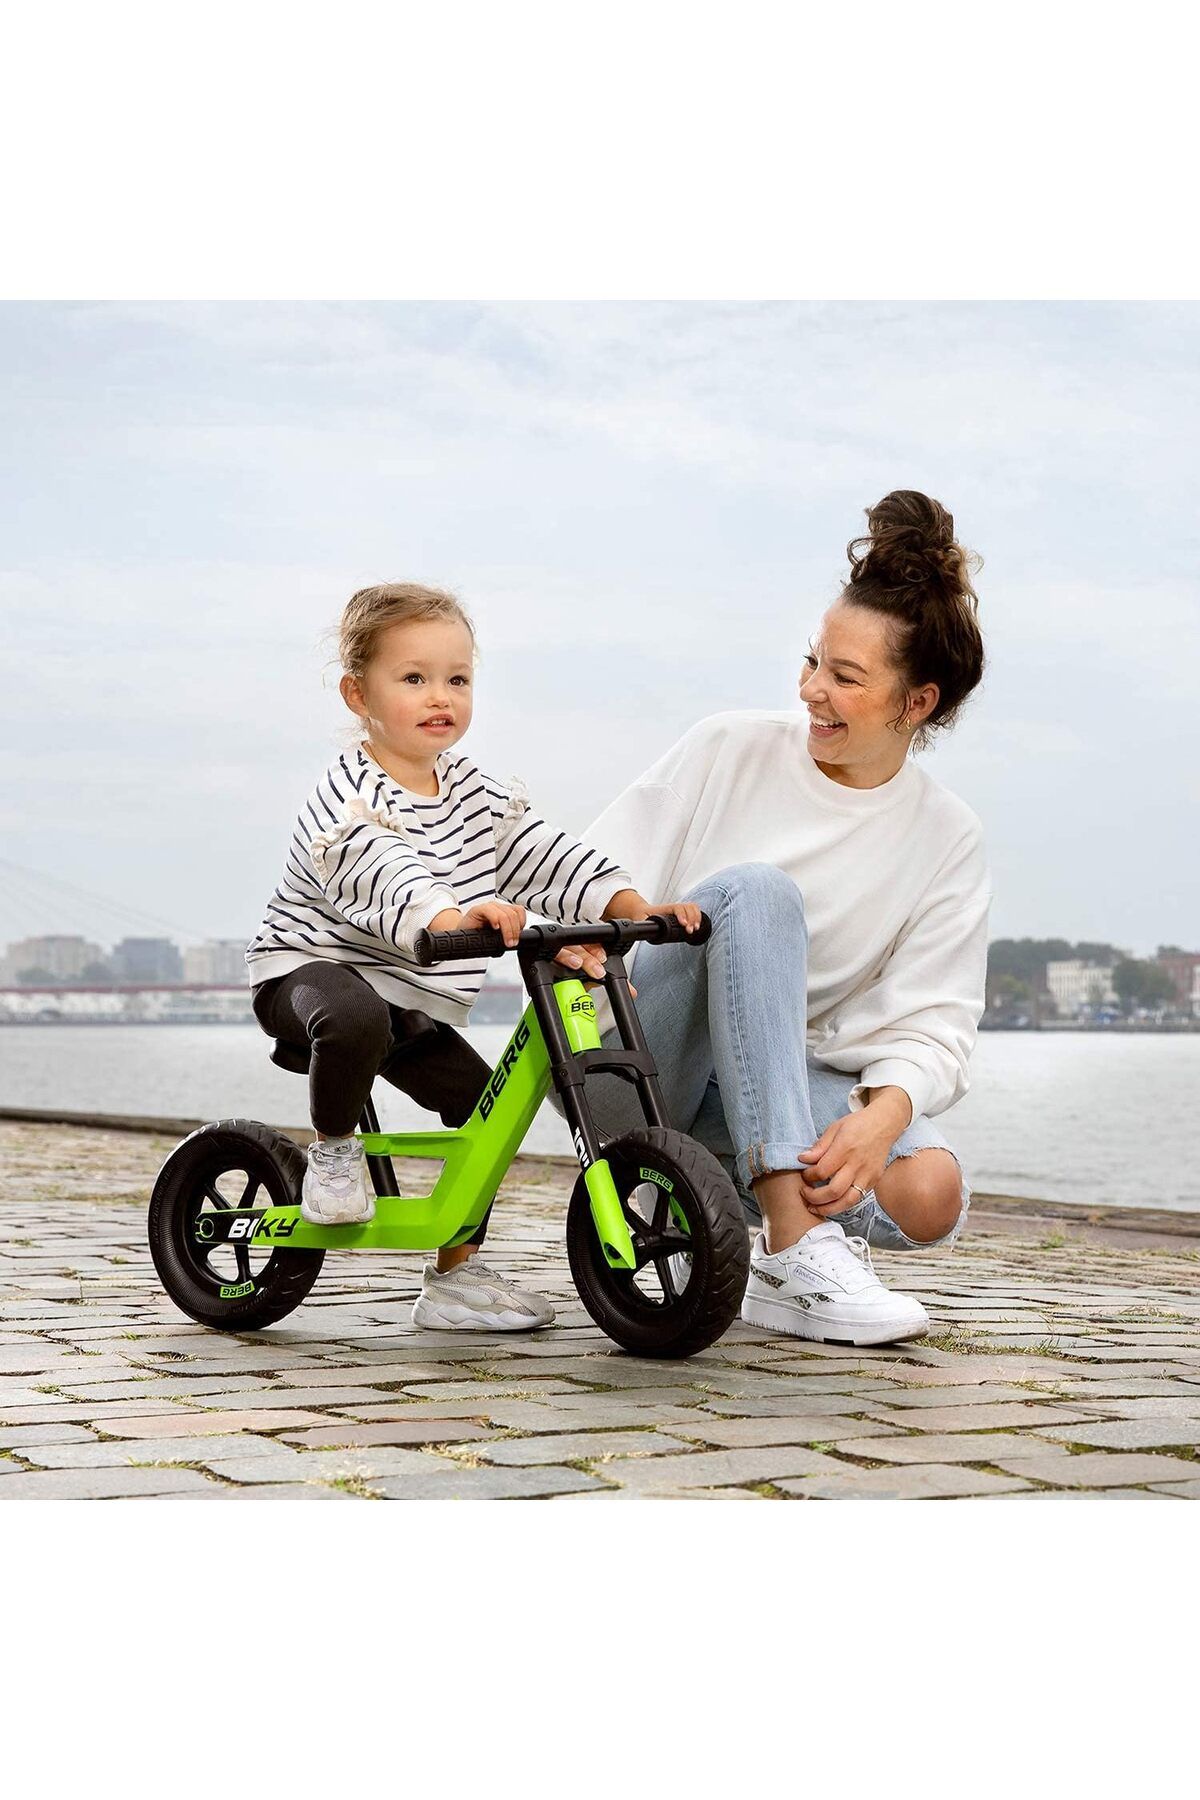 BERG Çocuklar İçin Mini Yeşil Denge Bisikleti: Hafif Tasarım, Güvenli ve Eğlenceli Sürüş